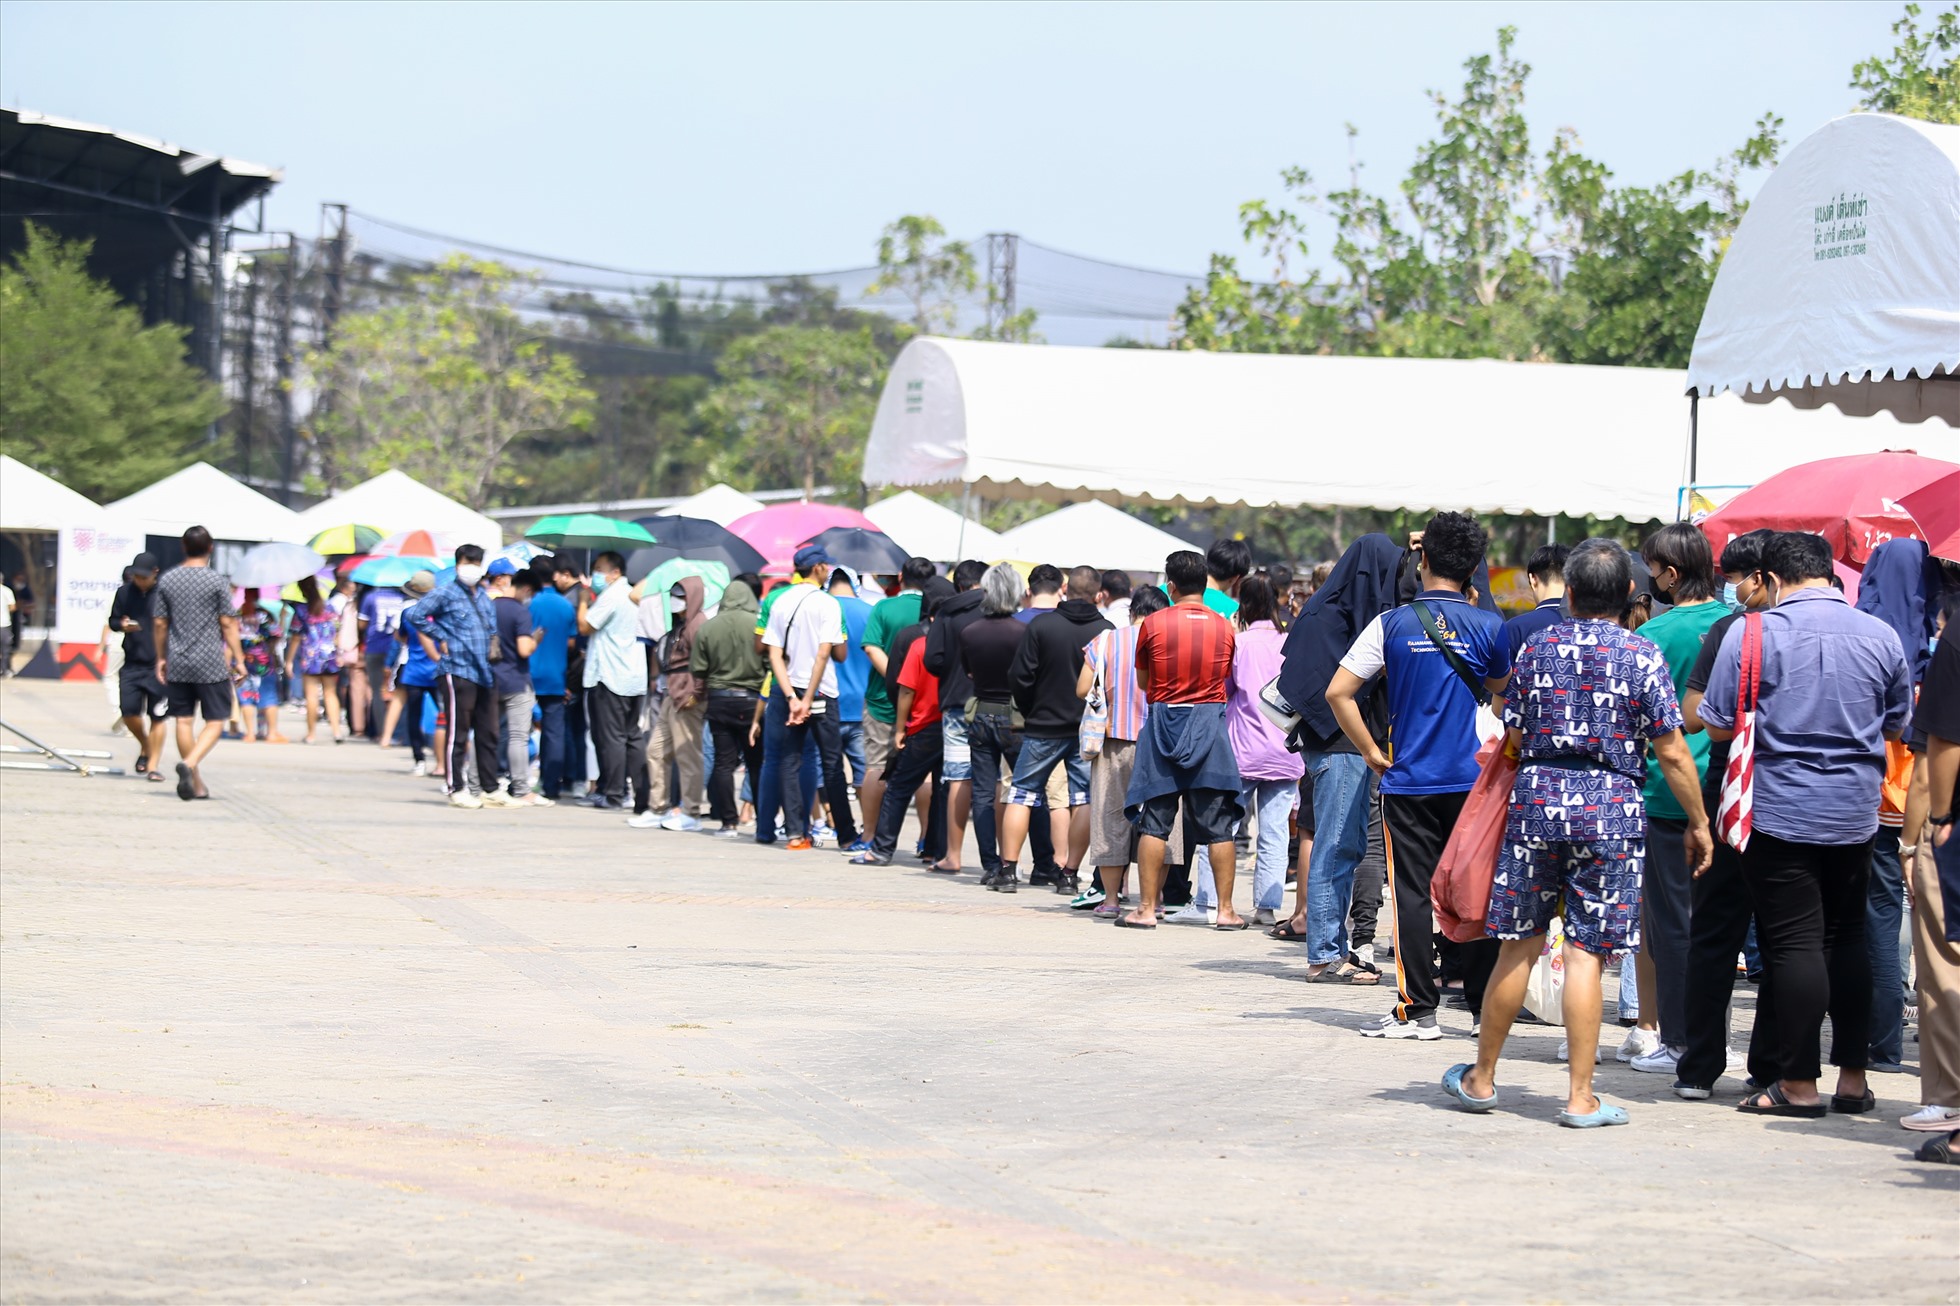 Trưa 16.1, tại cổng chính sân vận động Thammasat, hàng nghìn cổ động viên Thái Lan đã xếp hàng chờ mua vé xem đội nhà đá chung kết AFF Cup 2022 với tuyển Việt Nam.